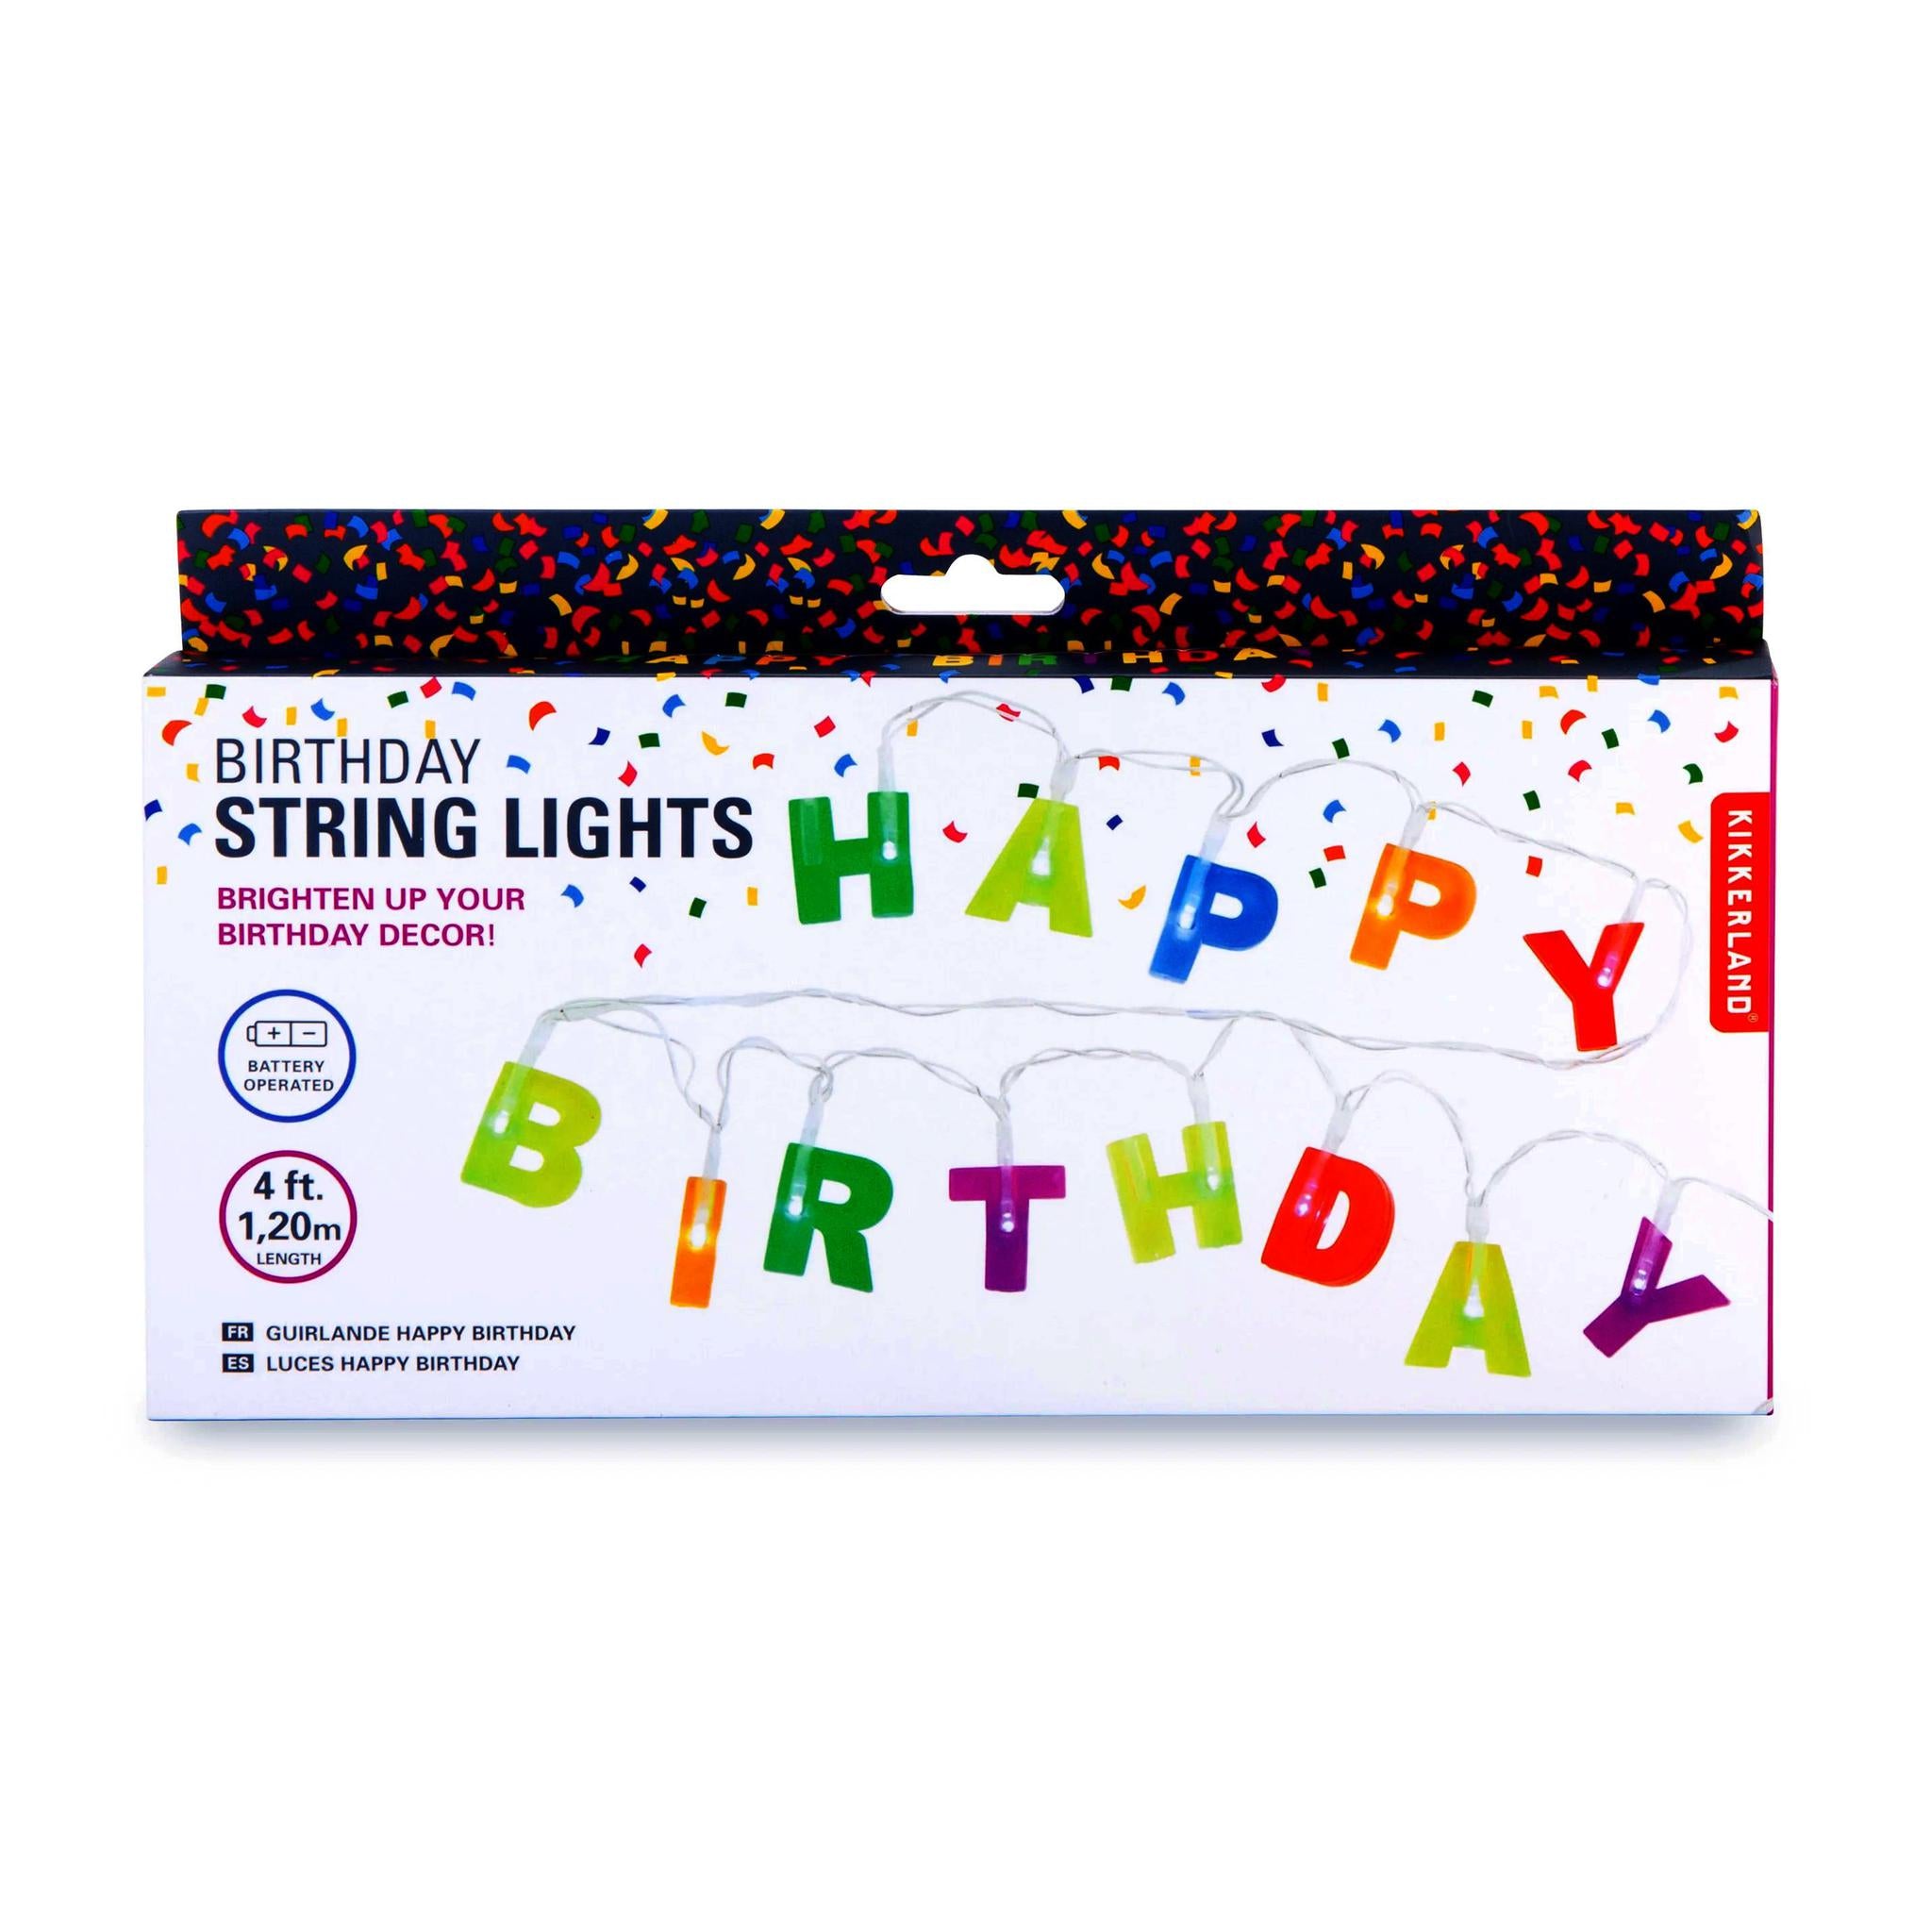 Birthday String Lights